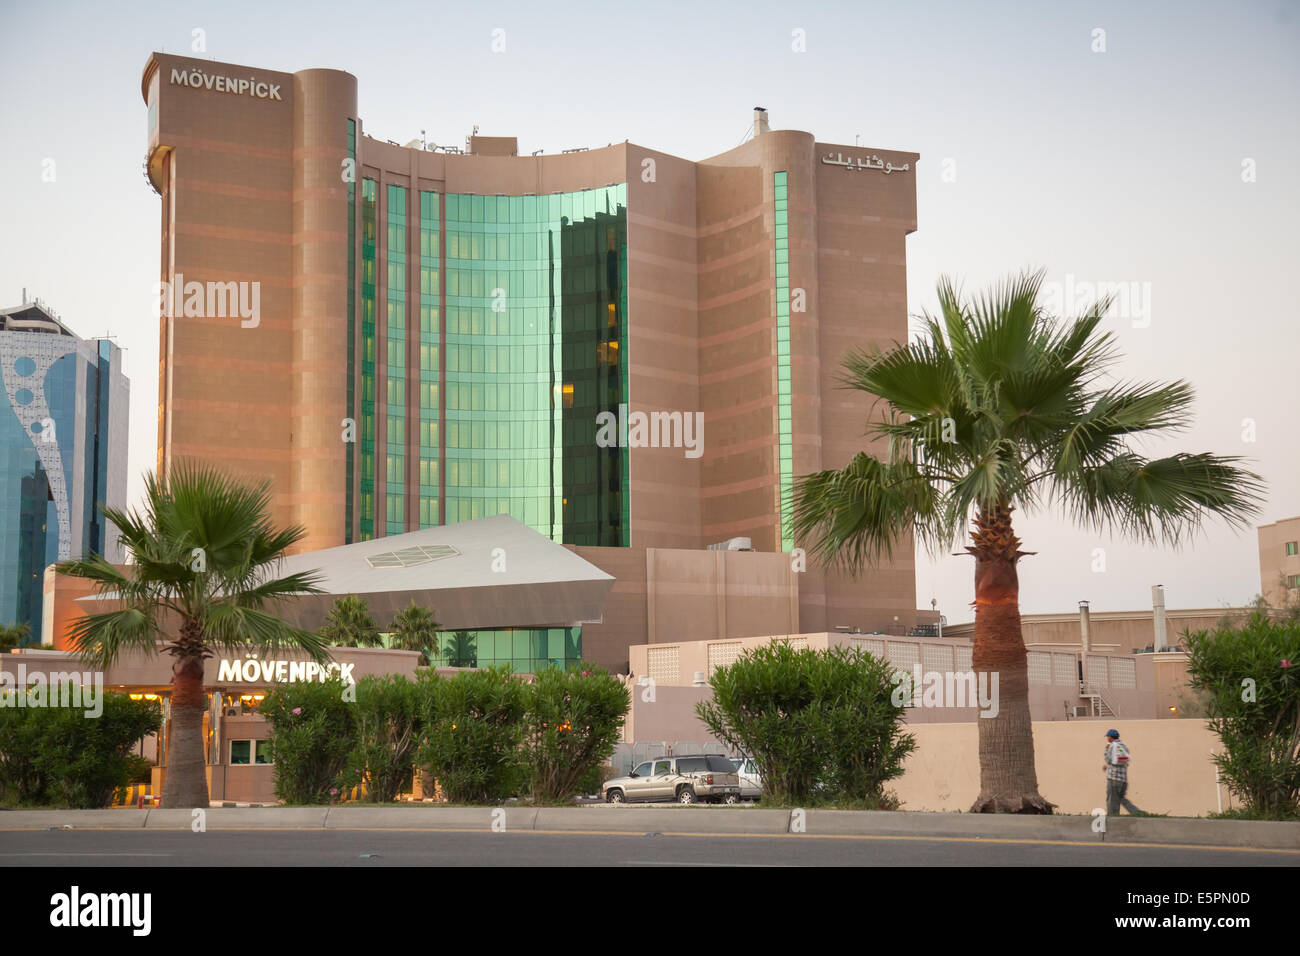 DAMMAM, Arabia Saudita - 15 Maggio 2014: Movenpick Hotel esterno in Dammam City, Arabia Saudita Foto Stock